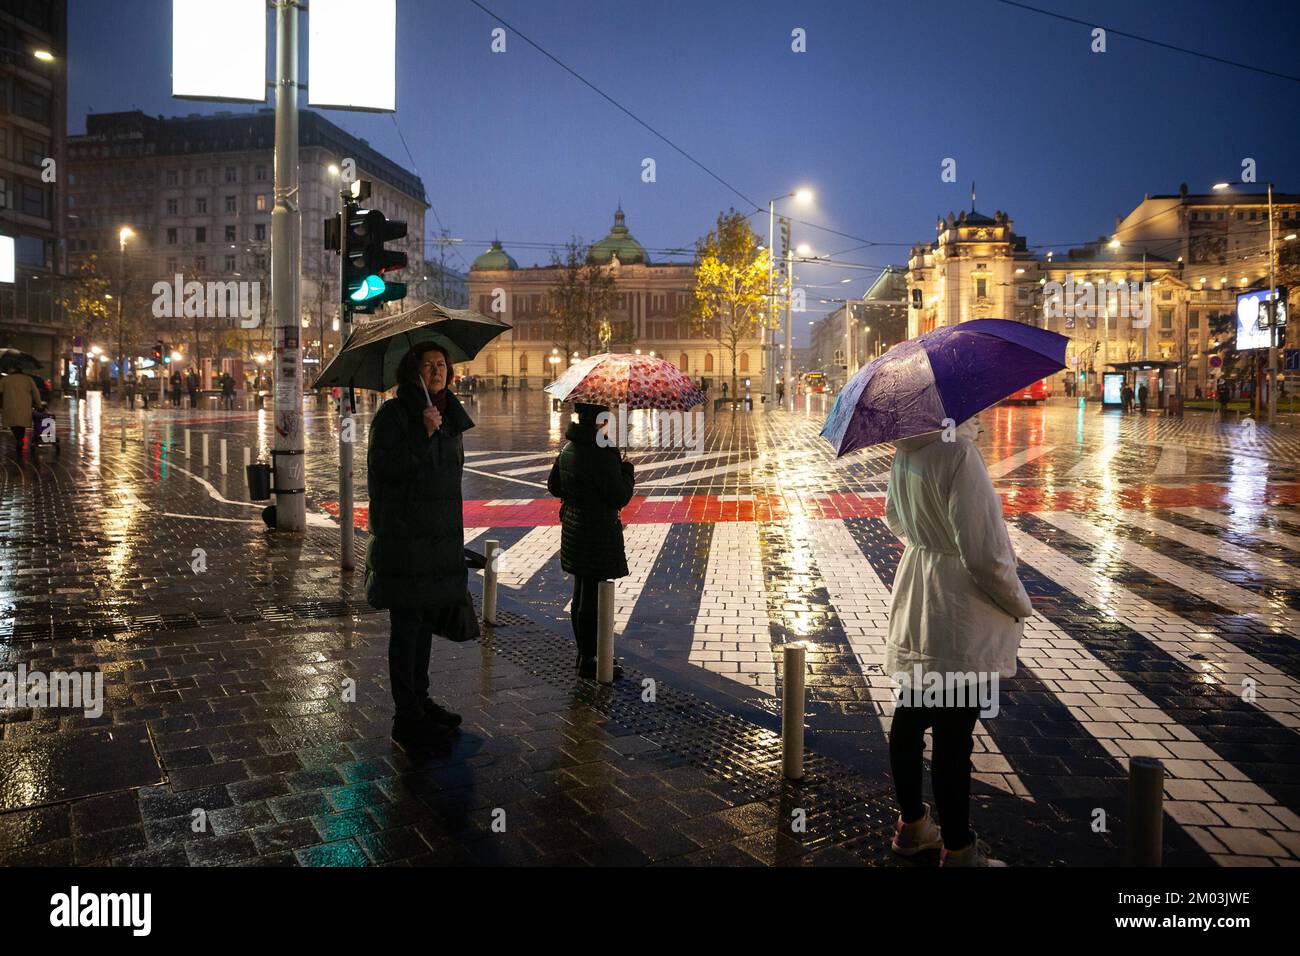 Imagen de personas con un paraguas esperando luz verde para cruzar un cruce en el centro de la ciudad de Belgrado, durante las fuertes lluvias, en otoño. Foto de stock